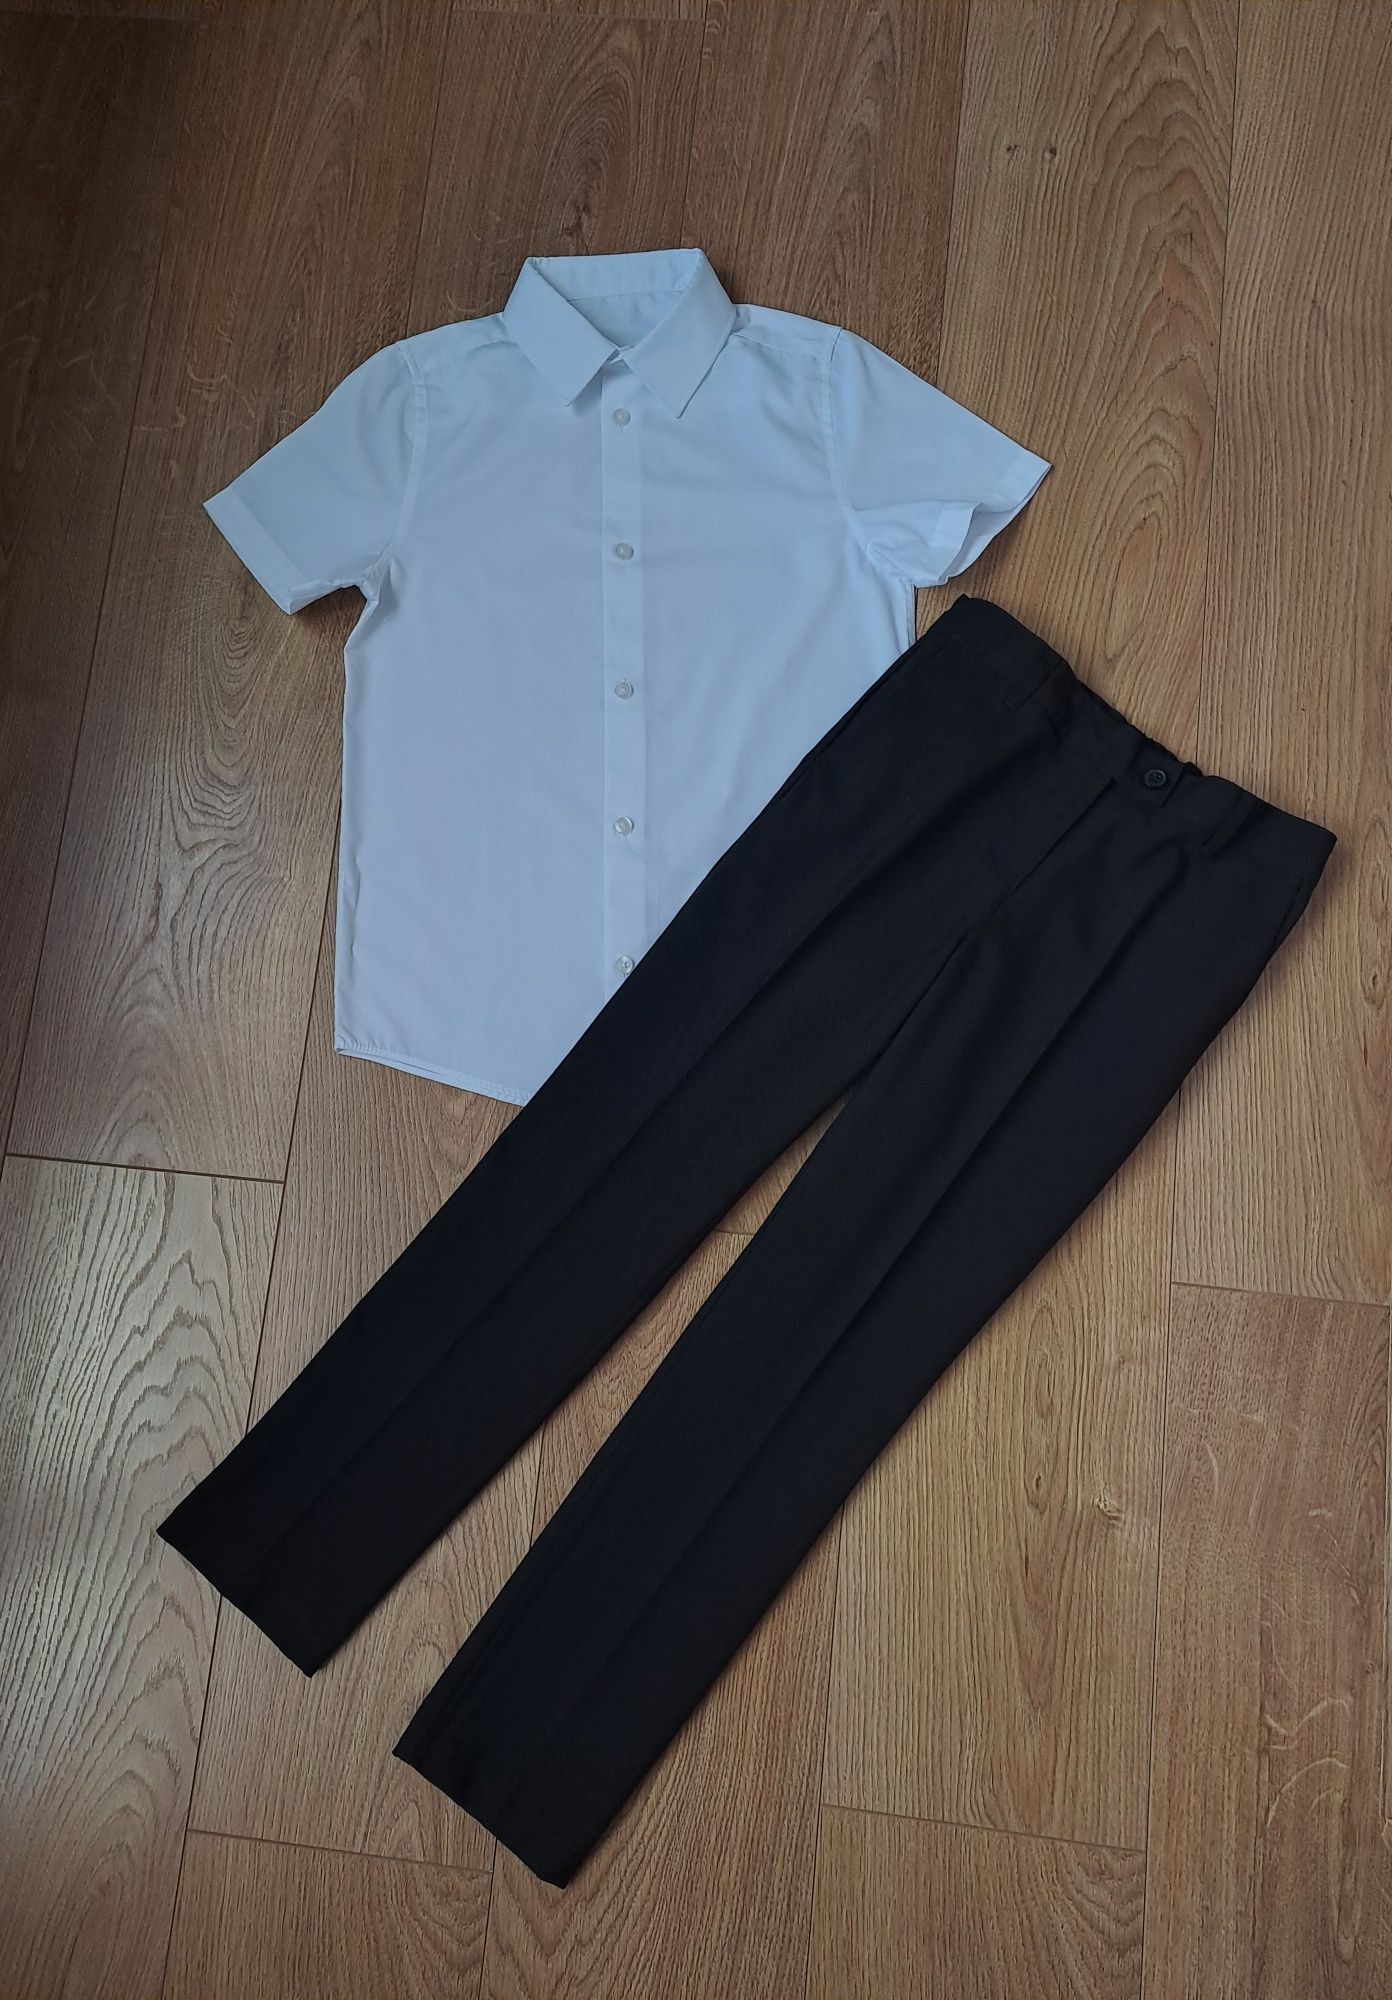 Костюм/чёрные брюки/белая рубашка с коротким рукавом